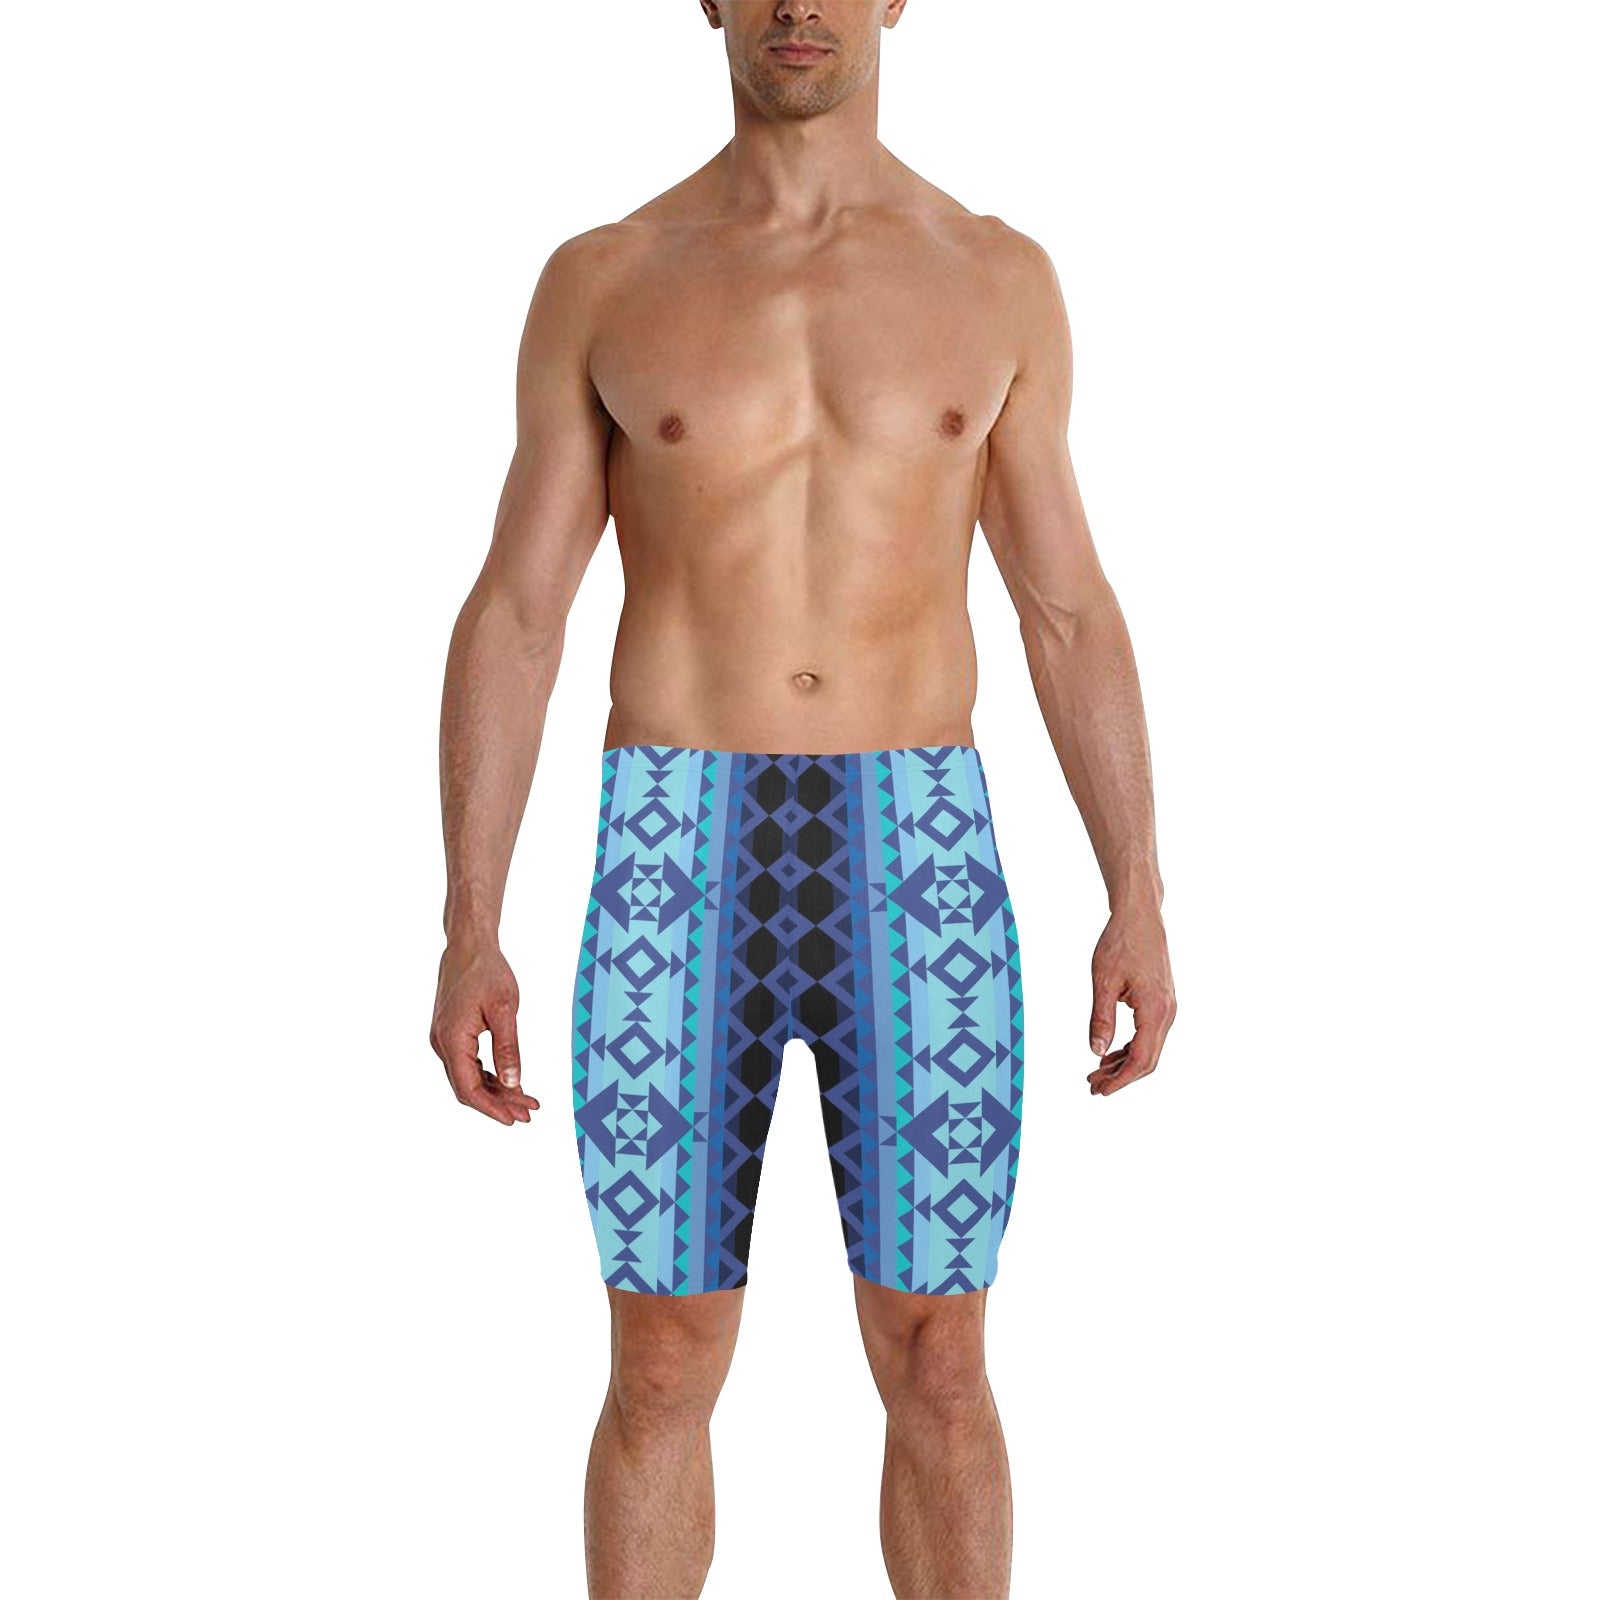 Tipi Men's Knee Length Swimming Trunks